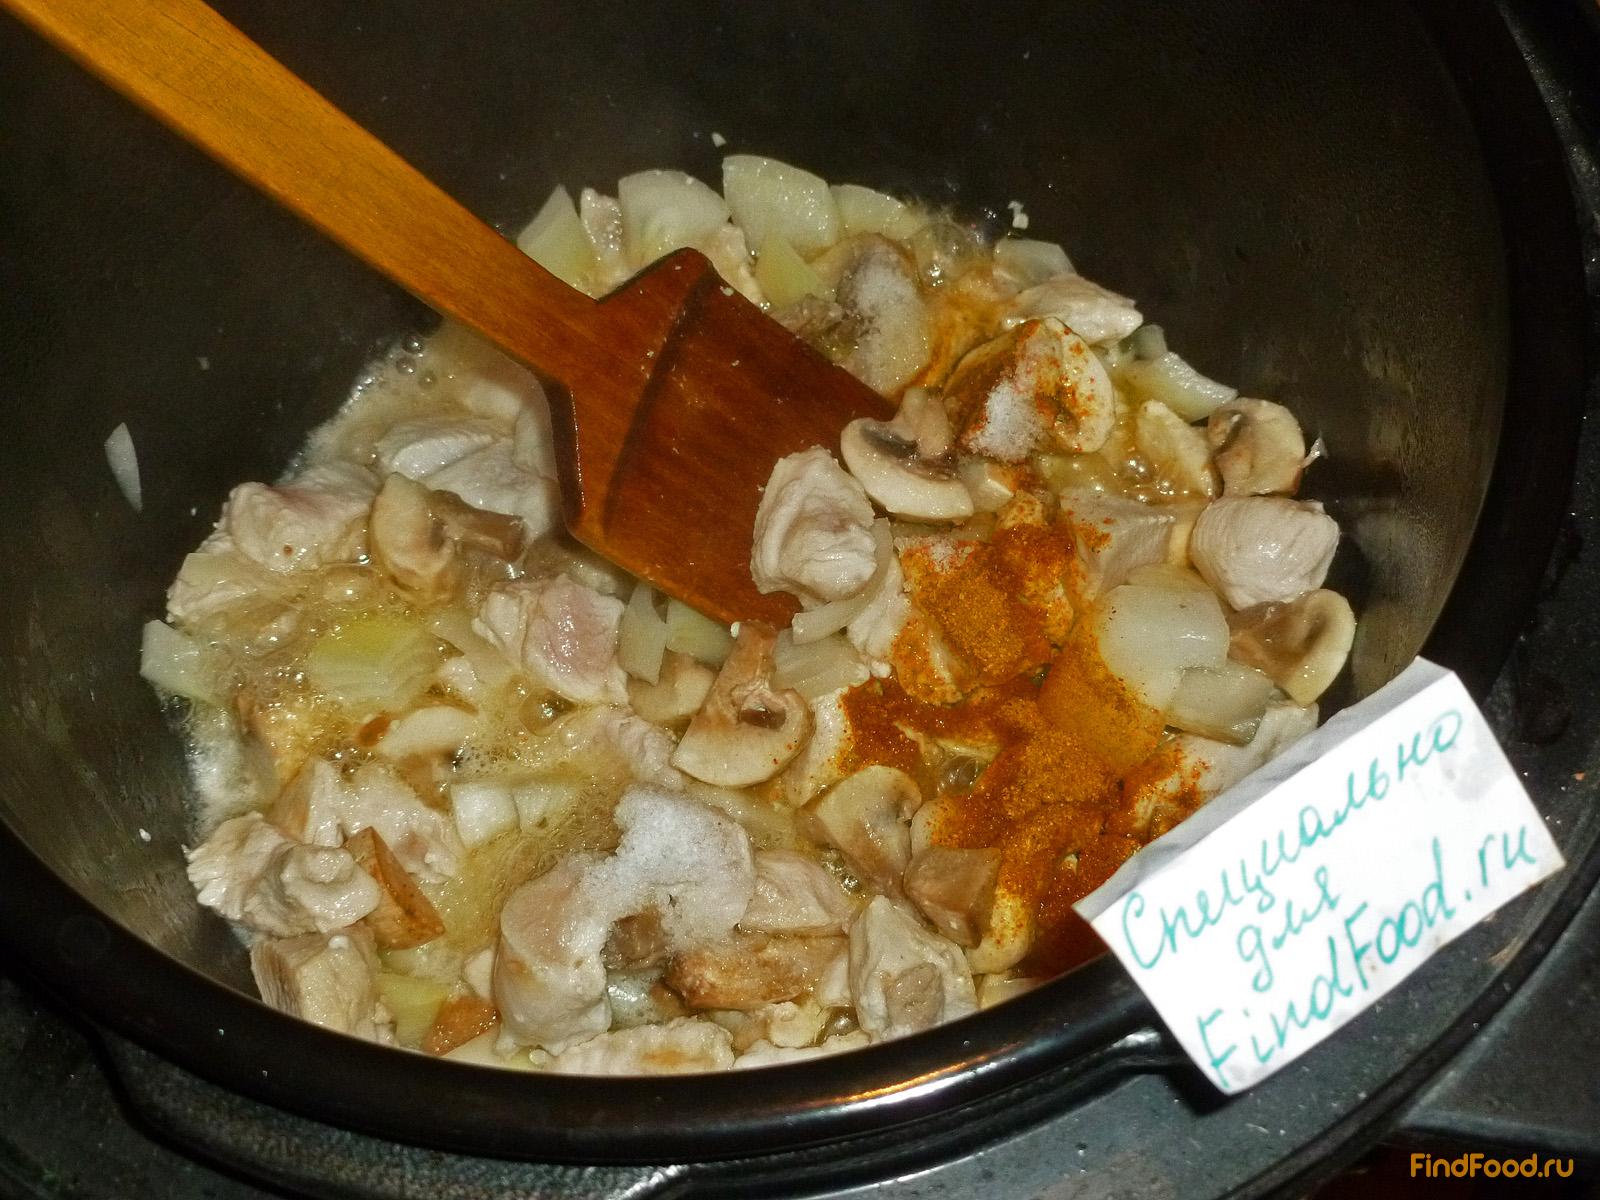 Пшеничная каша с курицей и грибами в мультиварке рецепт с фото 6-го шага 